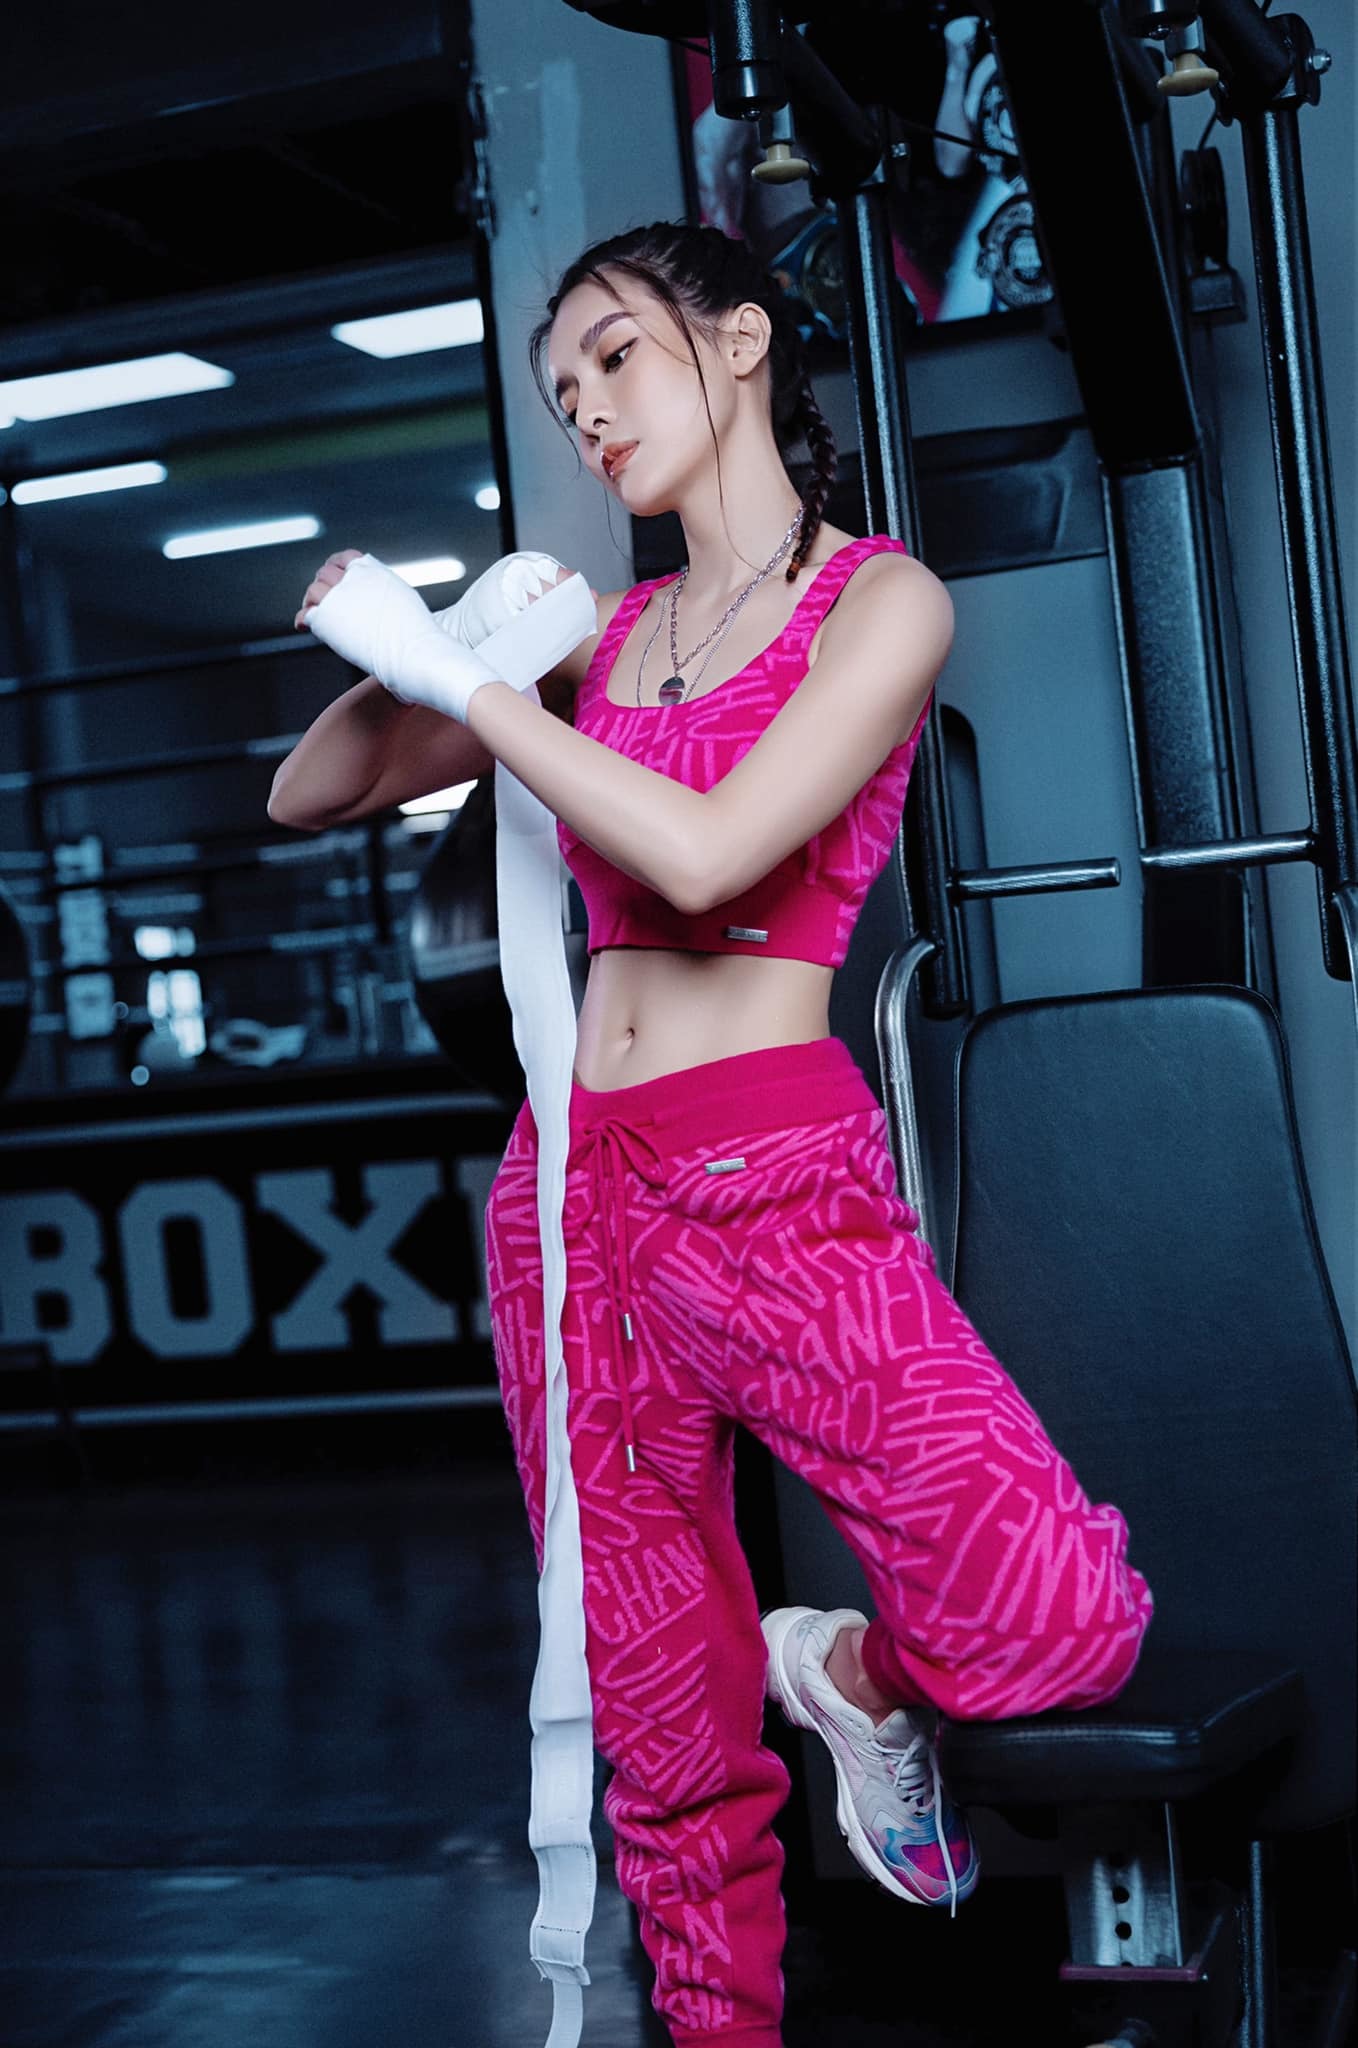 Nữ diễn viên chăm chỉ tập gym và chạy bộ để giữ được thân hình thon thả, nuột nà